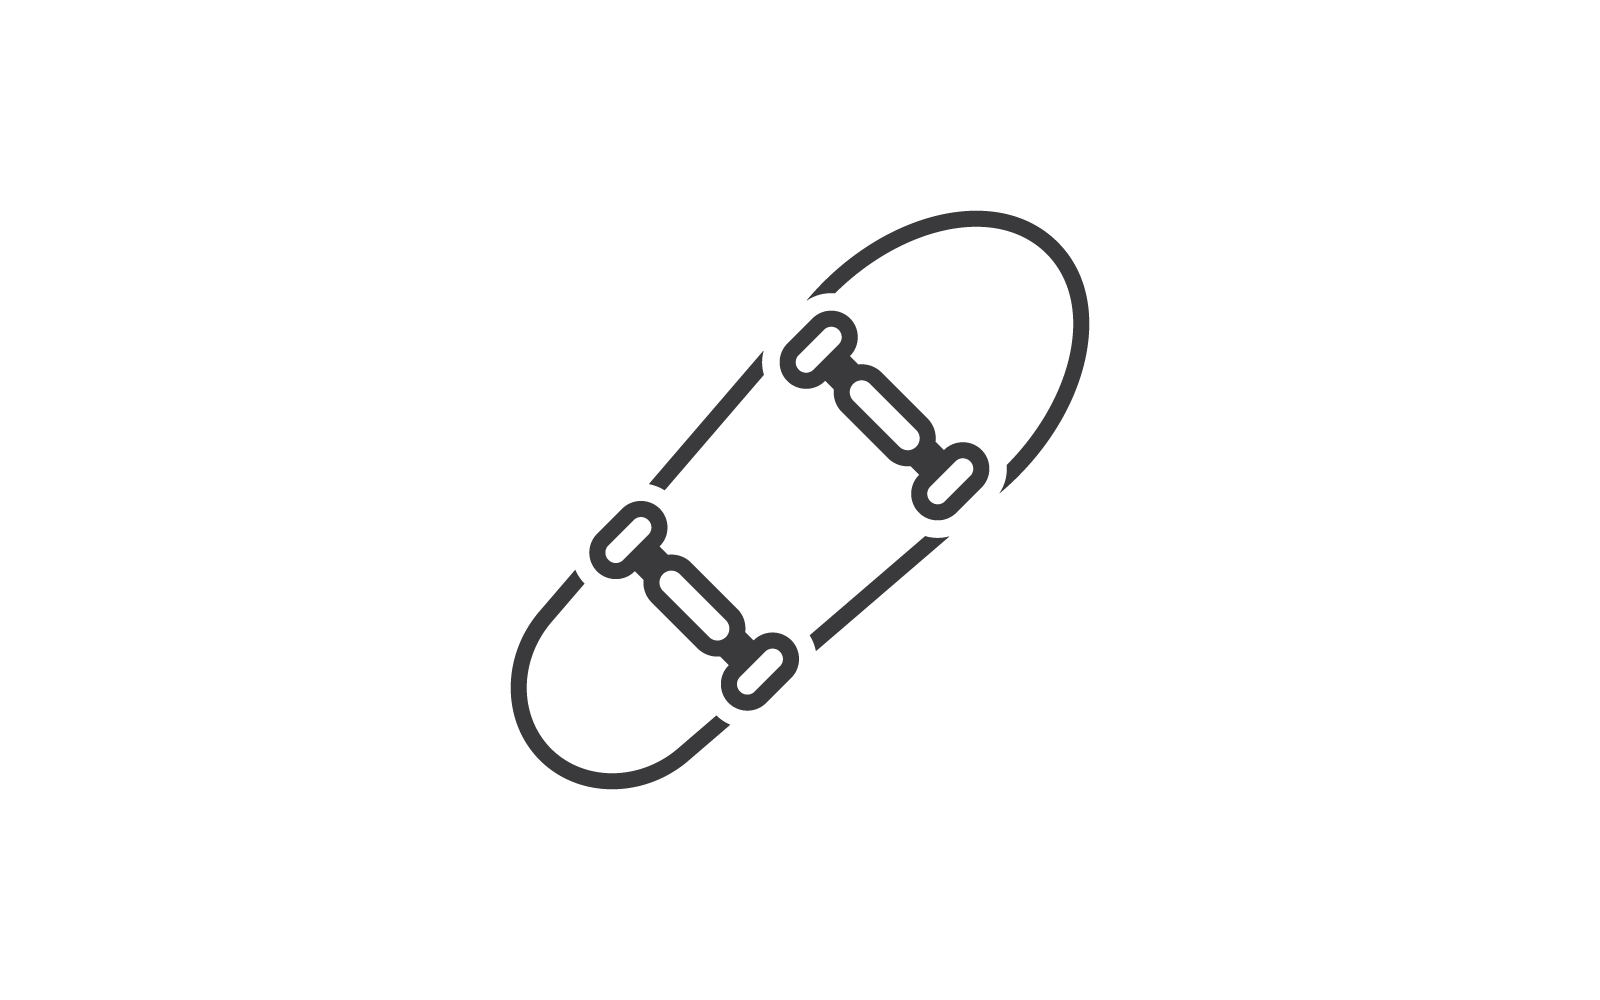 El diseño plano del vector de la ilustración del icono del monopatín es el logotipo y el icono para el entretenimiento del patinador deportivo